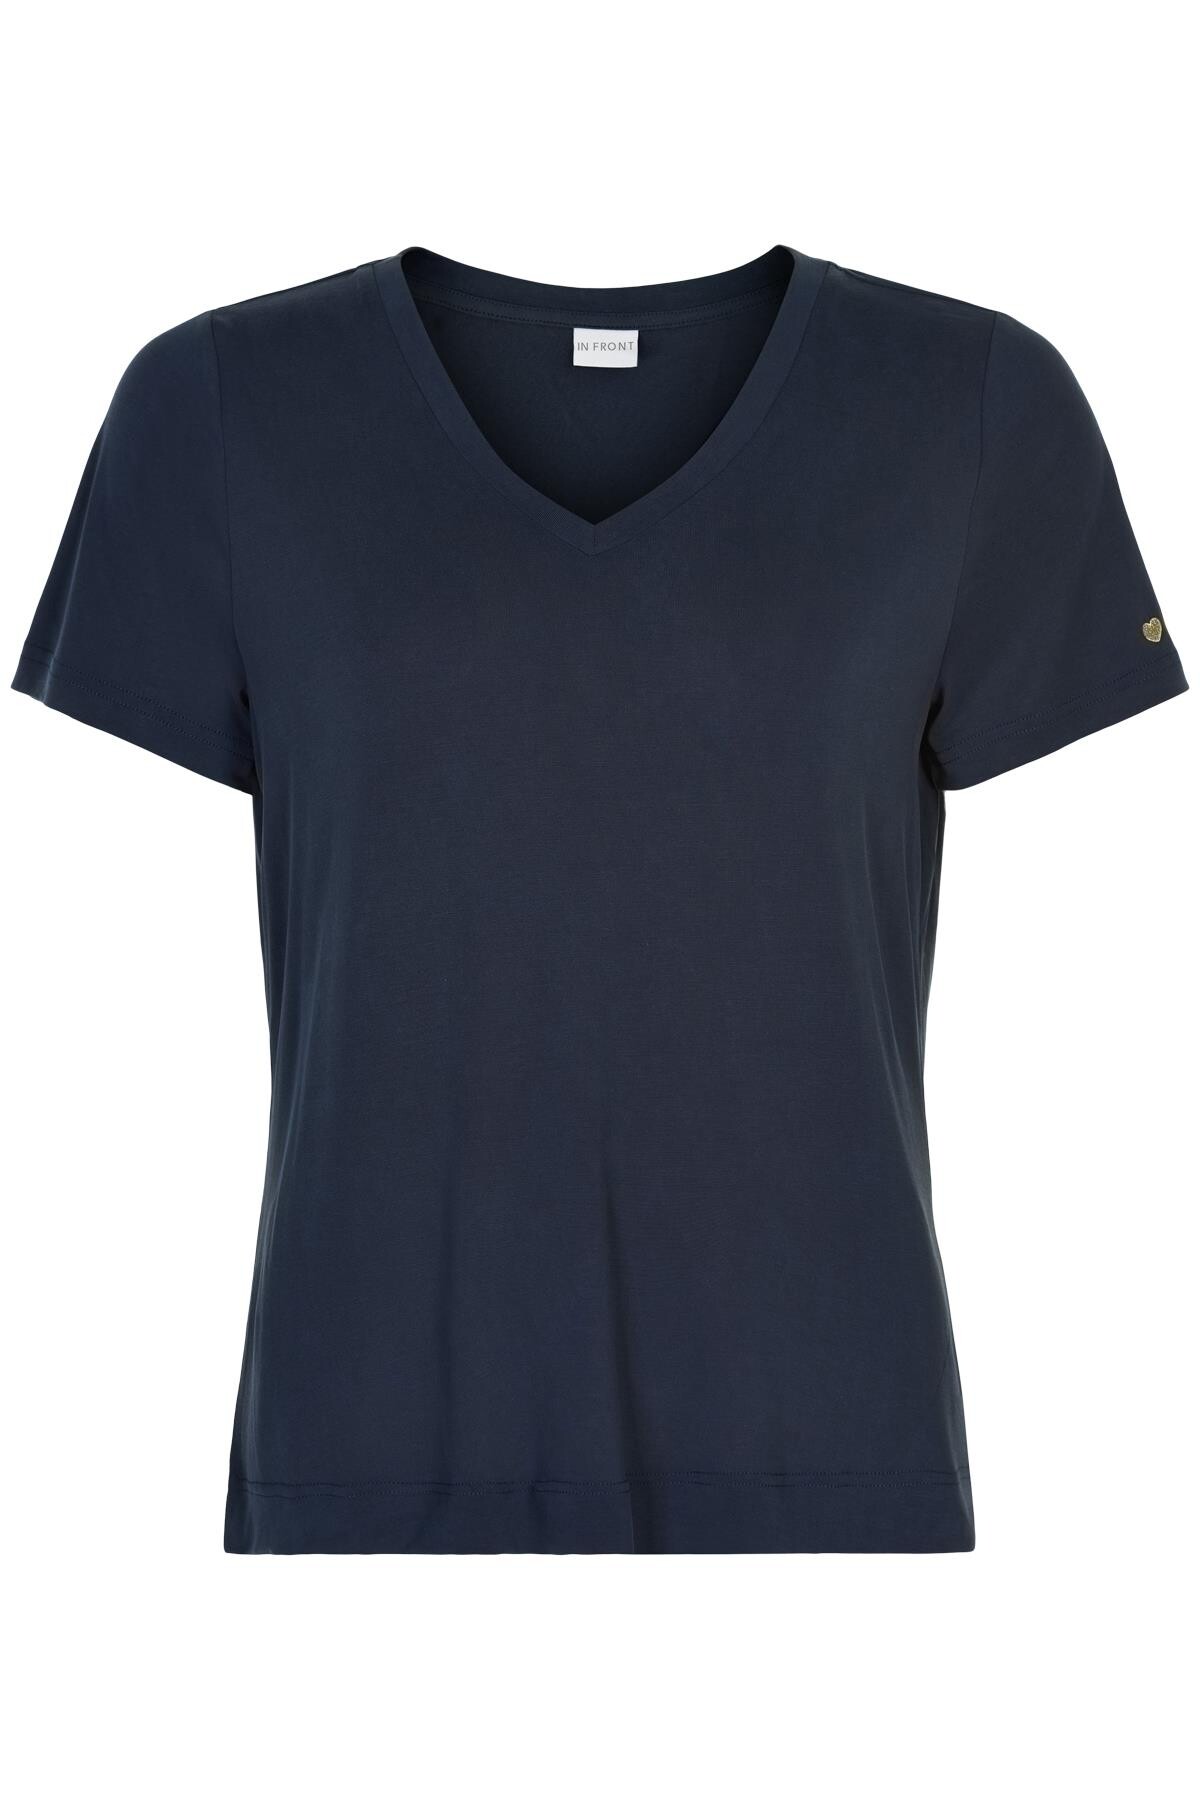 #2 - In Front Nina V-neck T-shirt, Farve: Blå, Størrelse: M, Dame